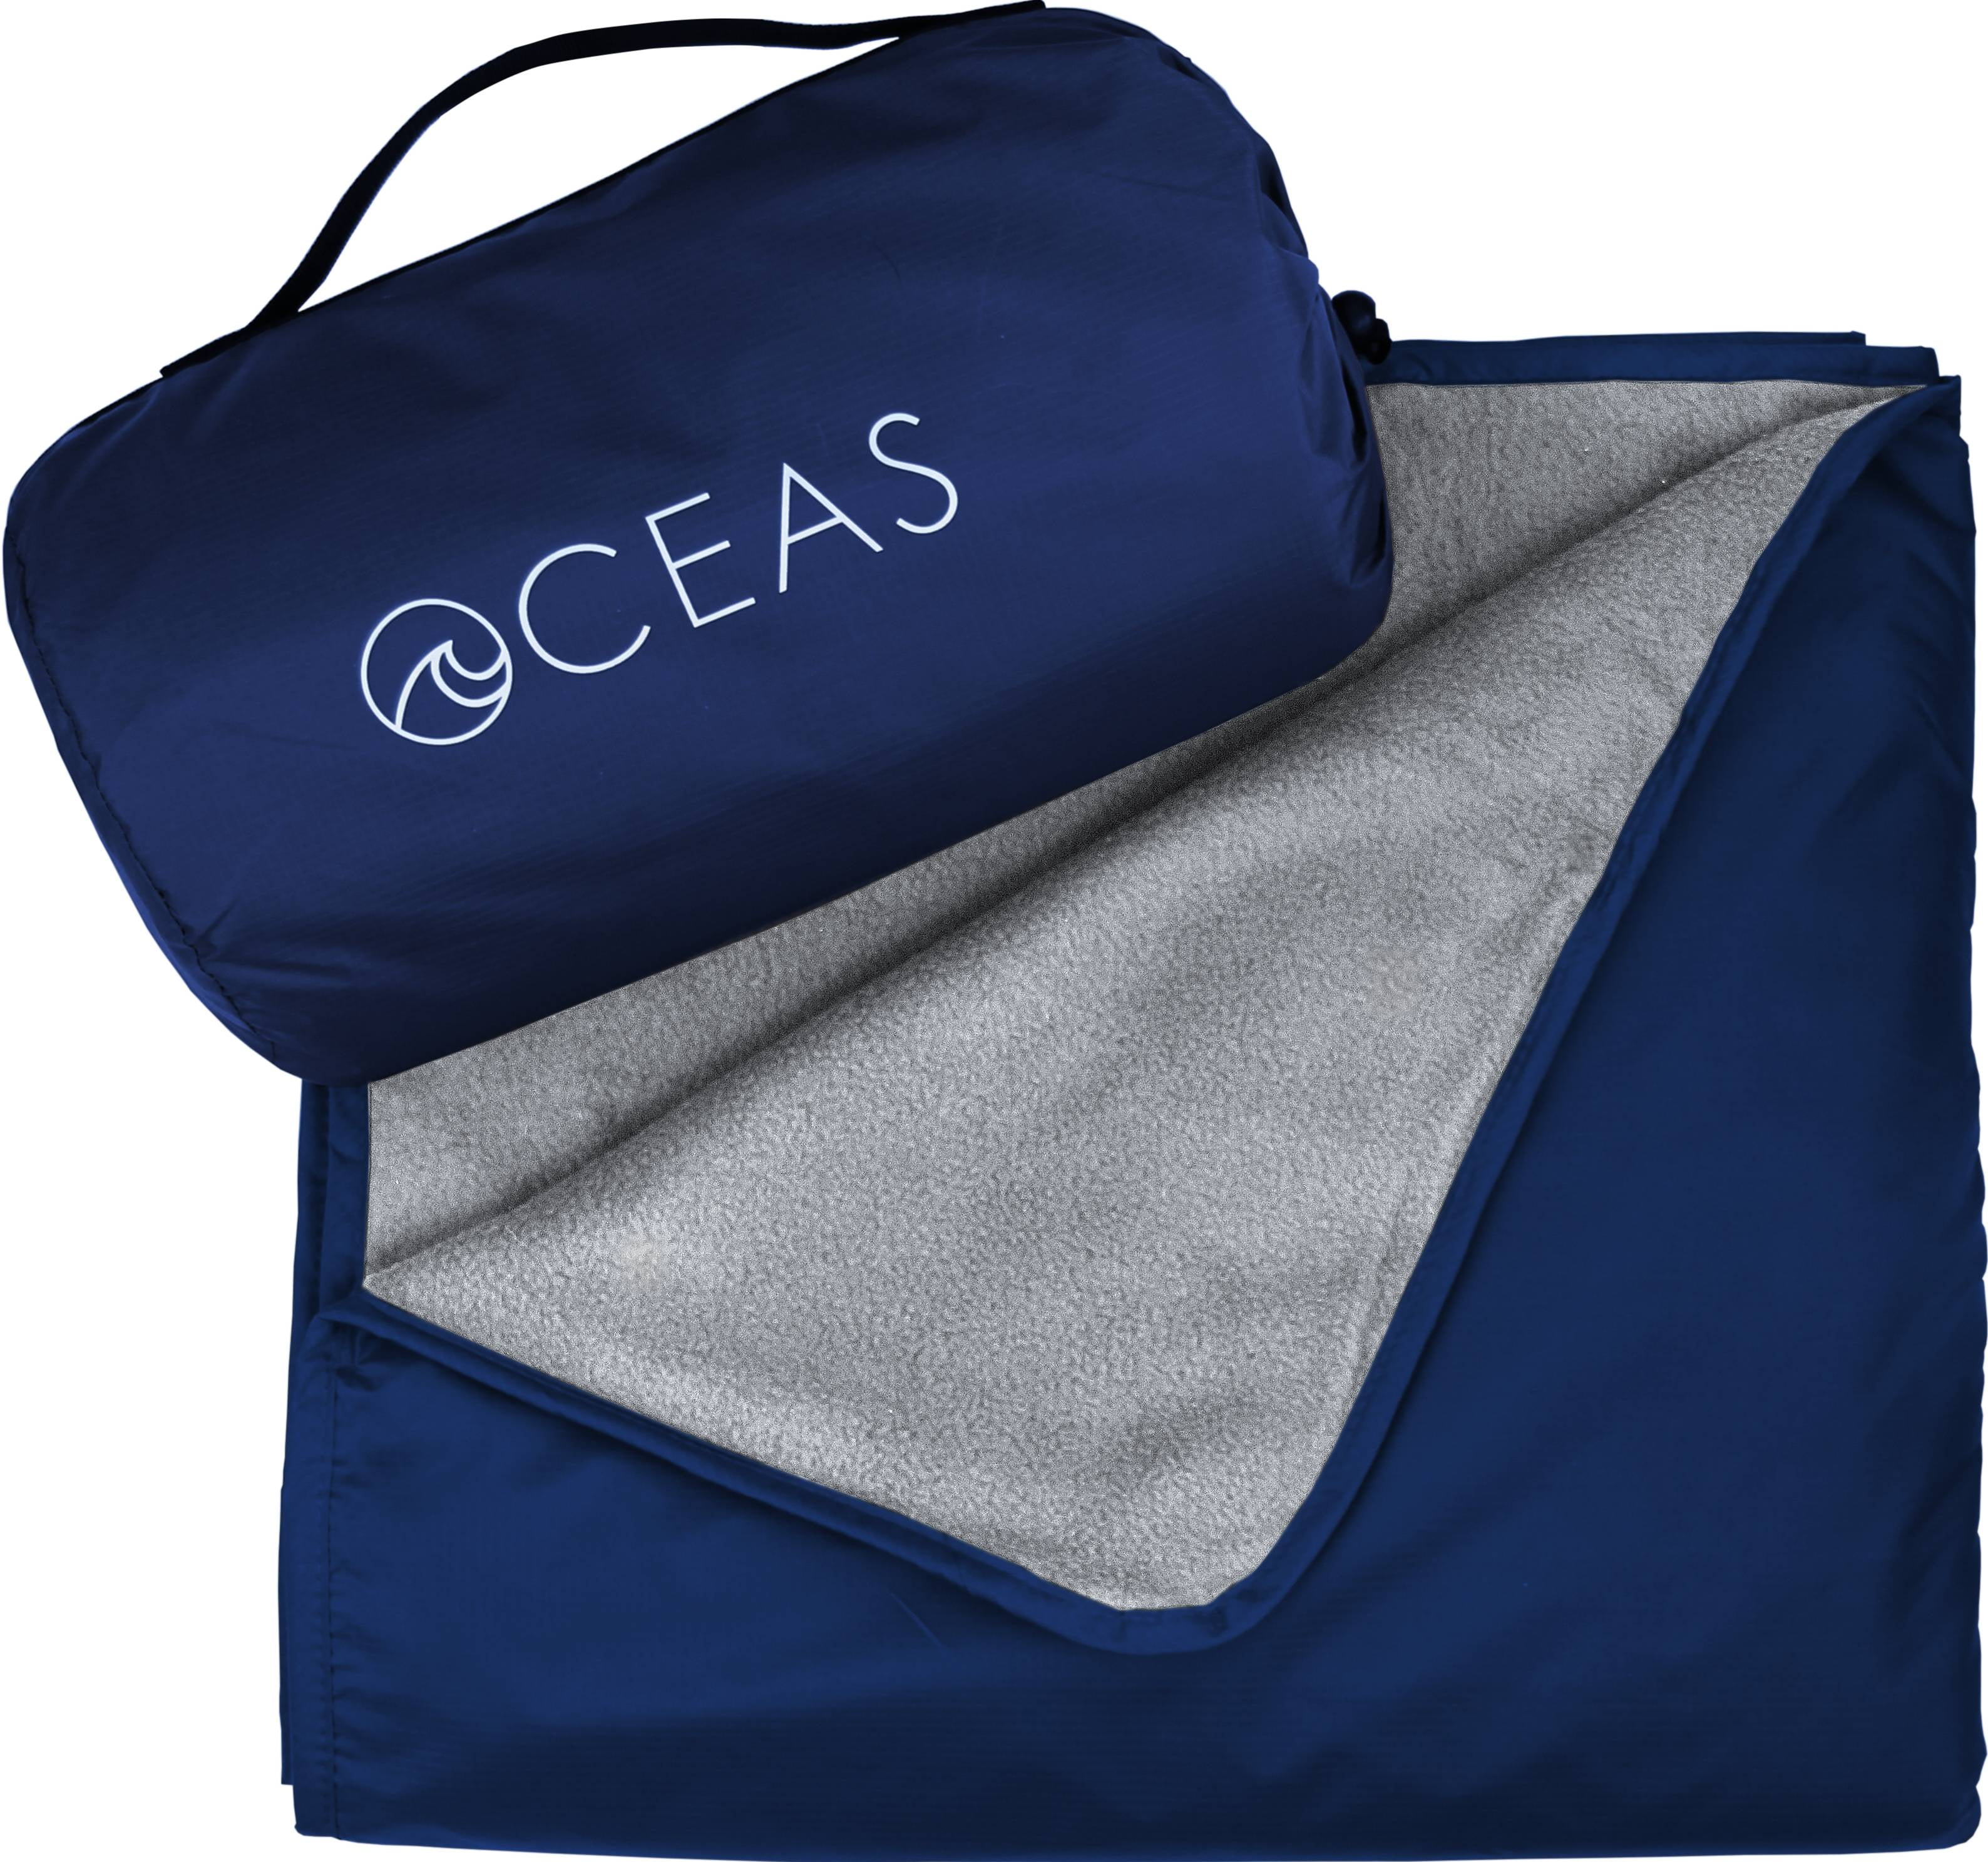 Oceas Large Waterproof Outdoor Blanket For Camping